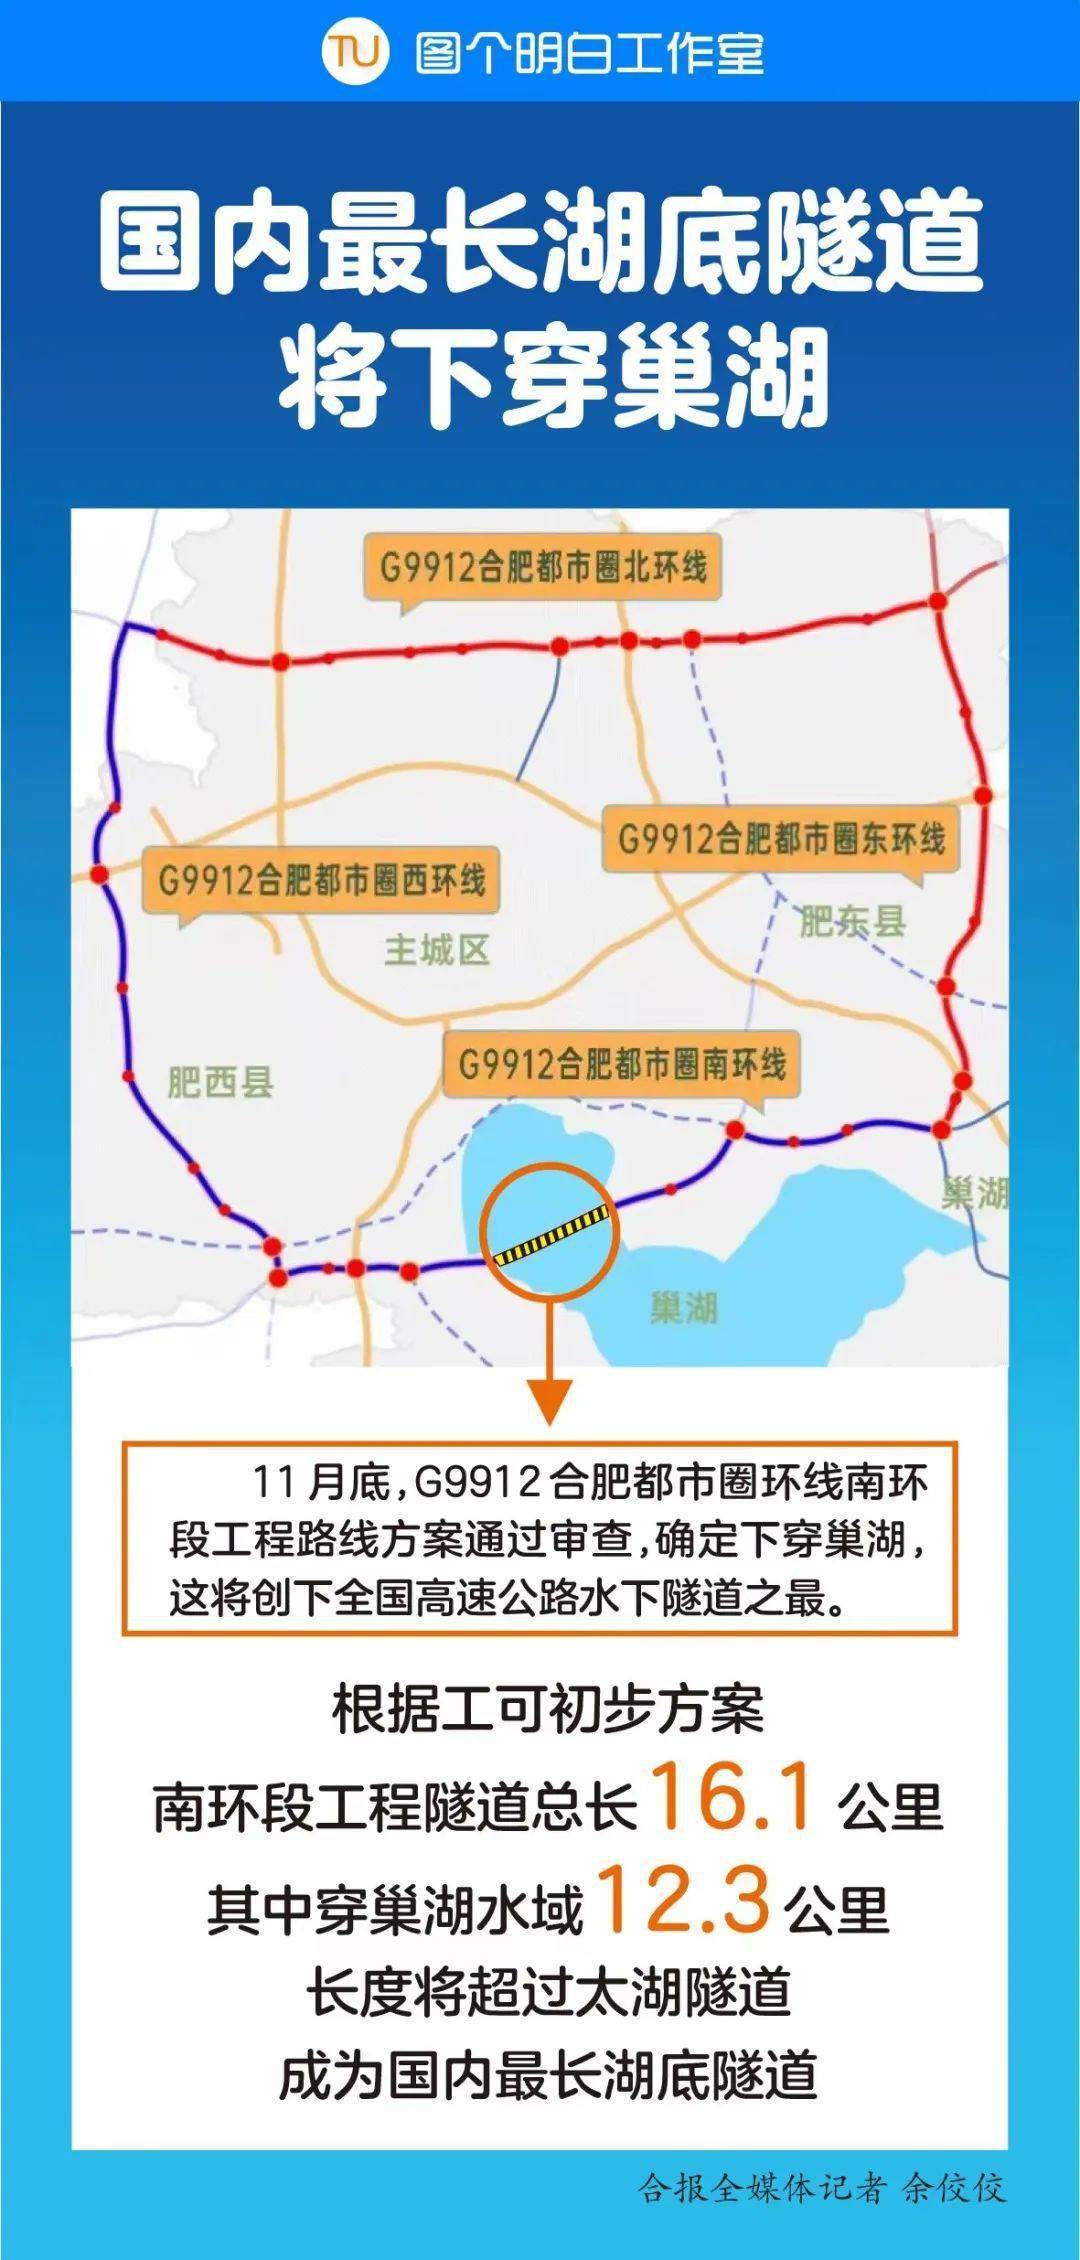 此前官方发布的合肥市域高速公路网规划图上显示,南环段中的和襄